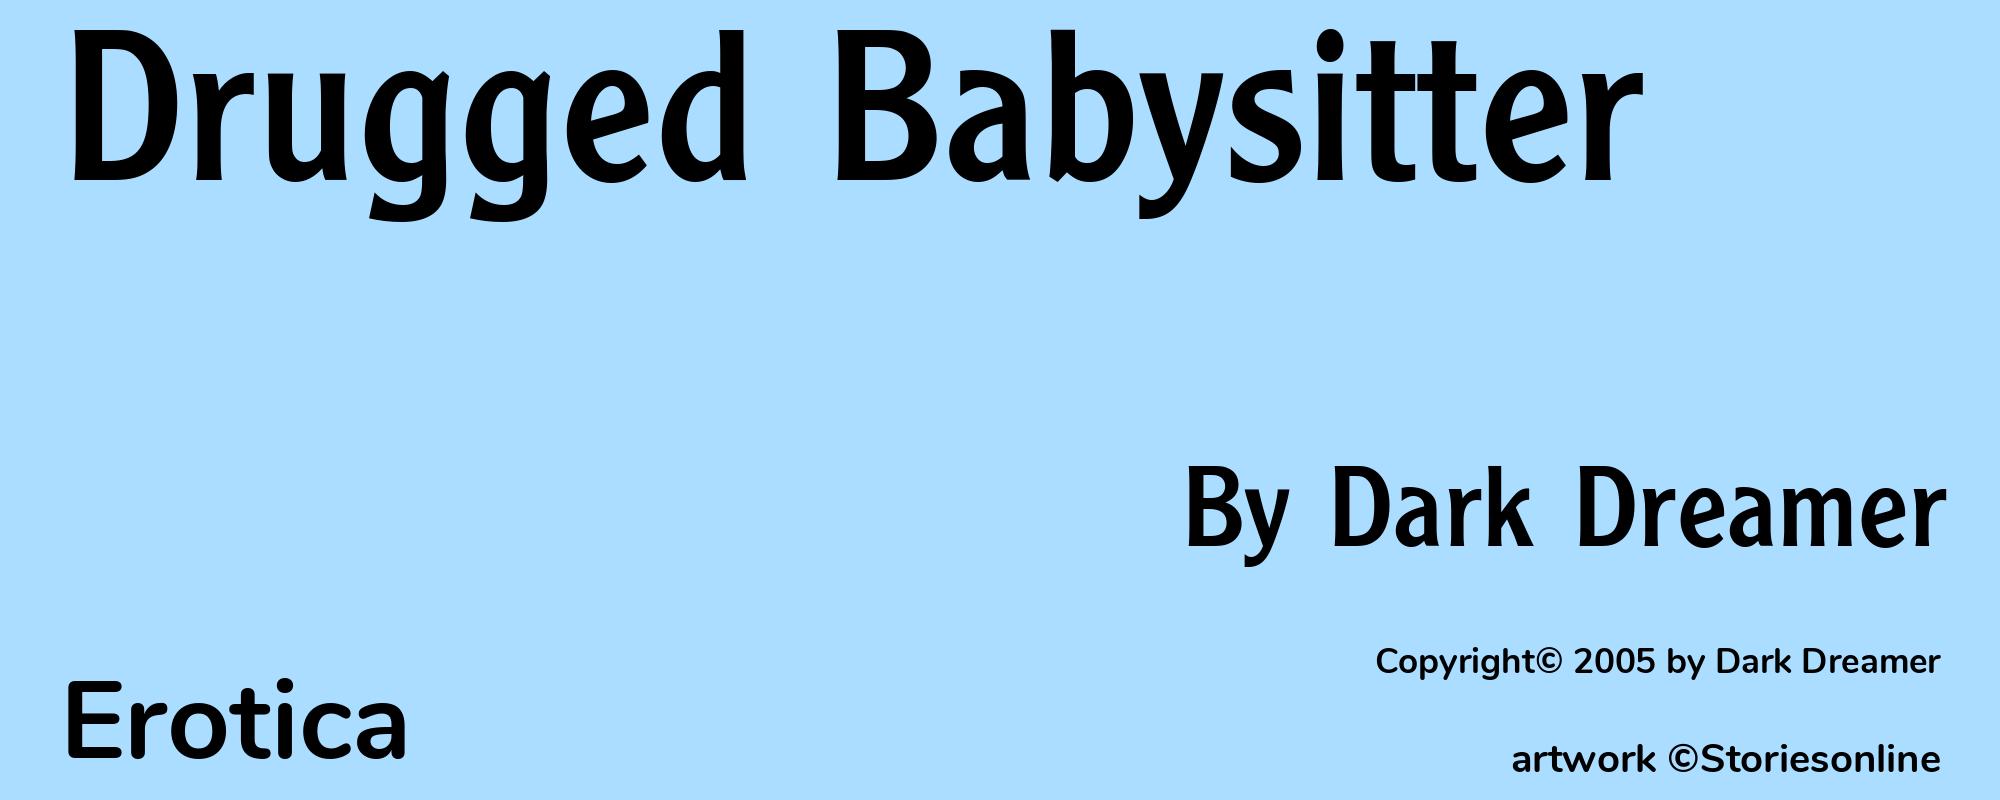 Drugged Babysitter - Cover